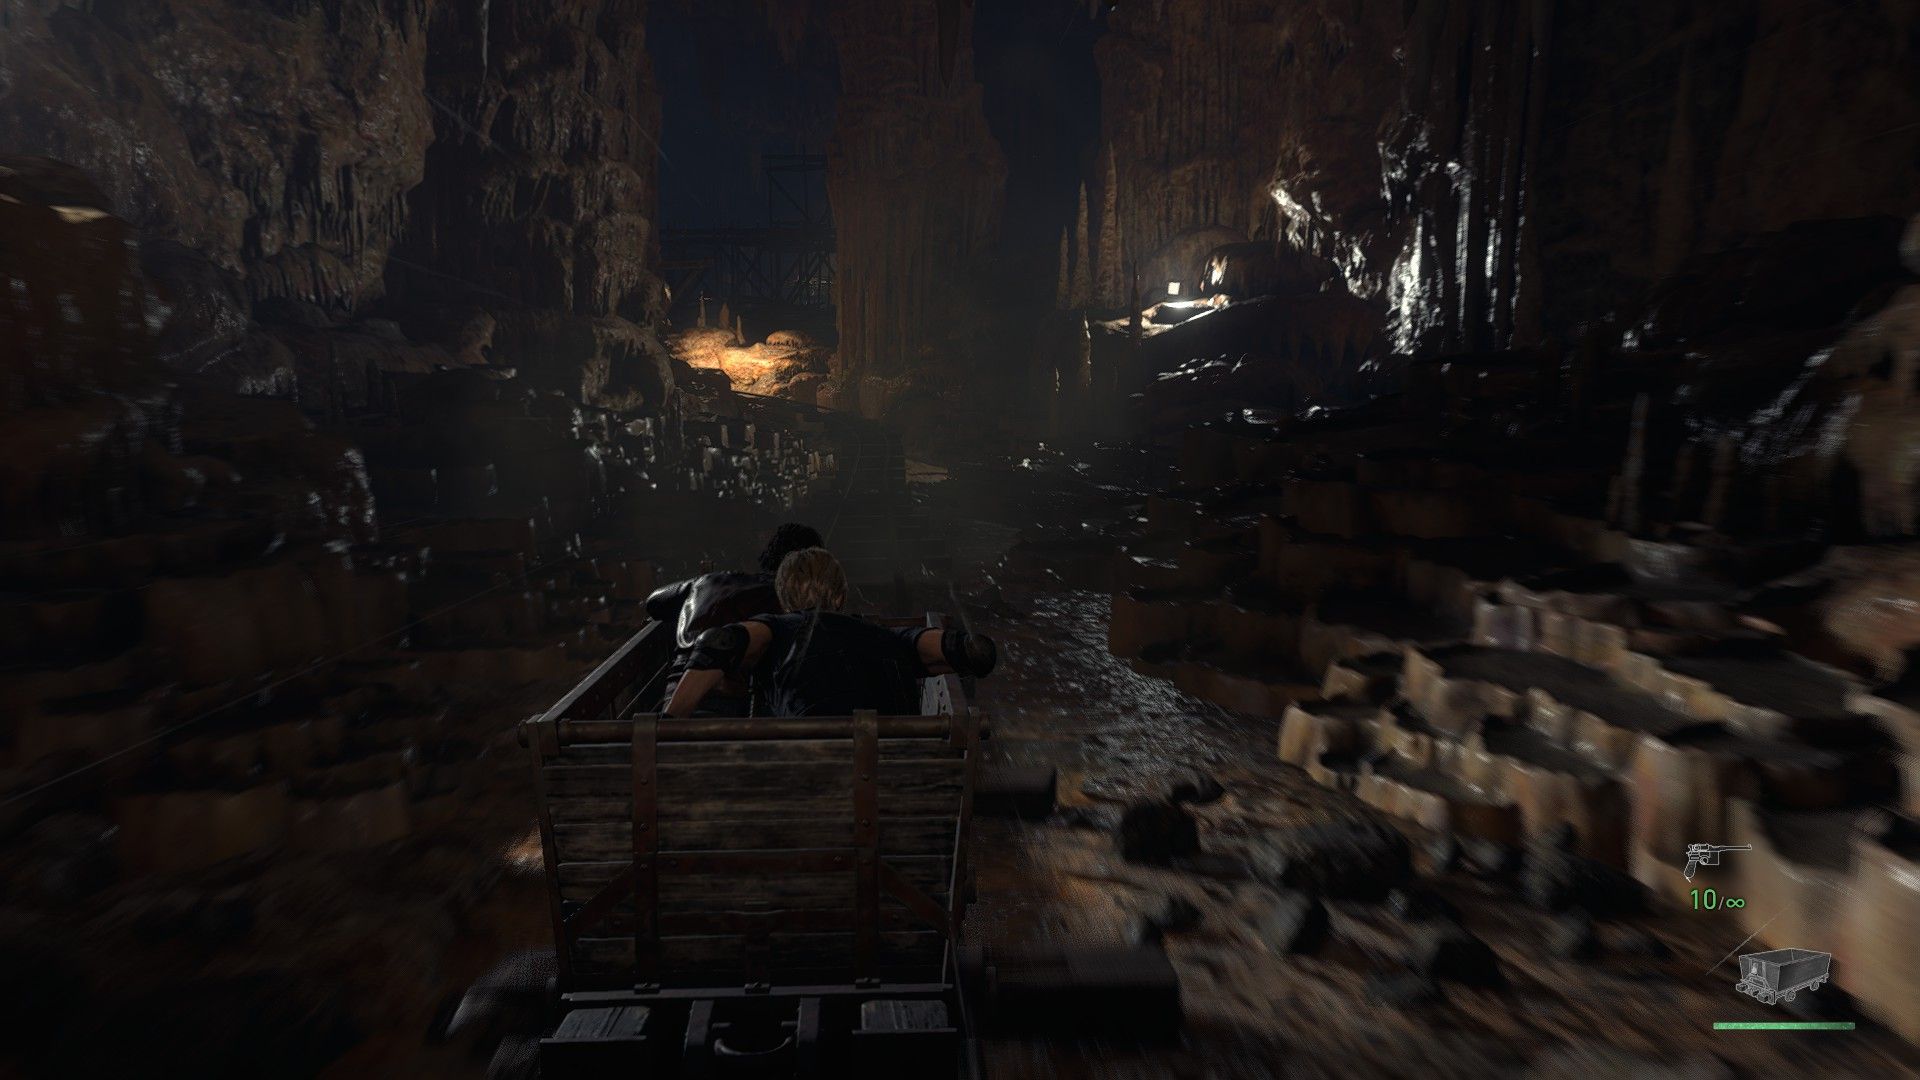 Сегмент с вагонетками стал в разы динамичнее и веселее! Скриншот из Resident Evil 4